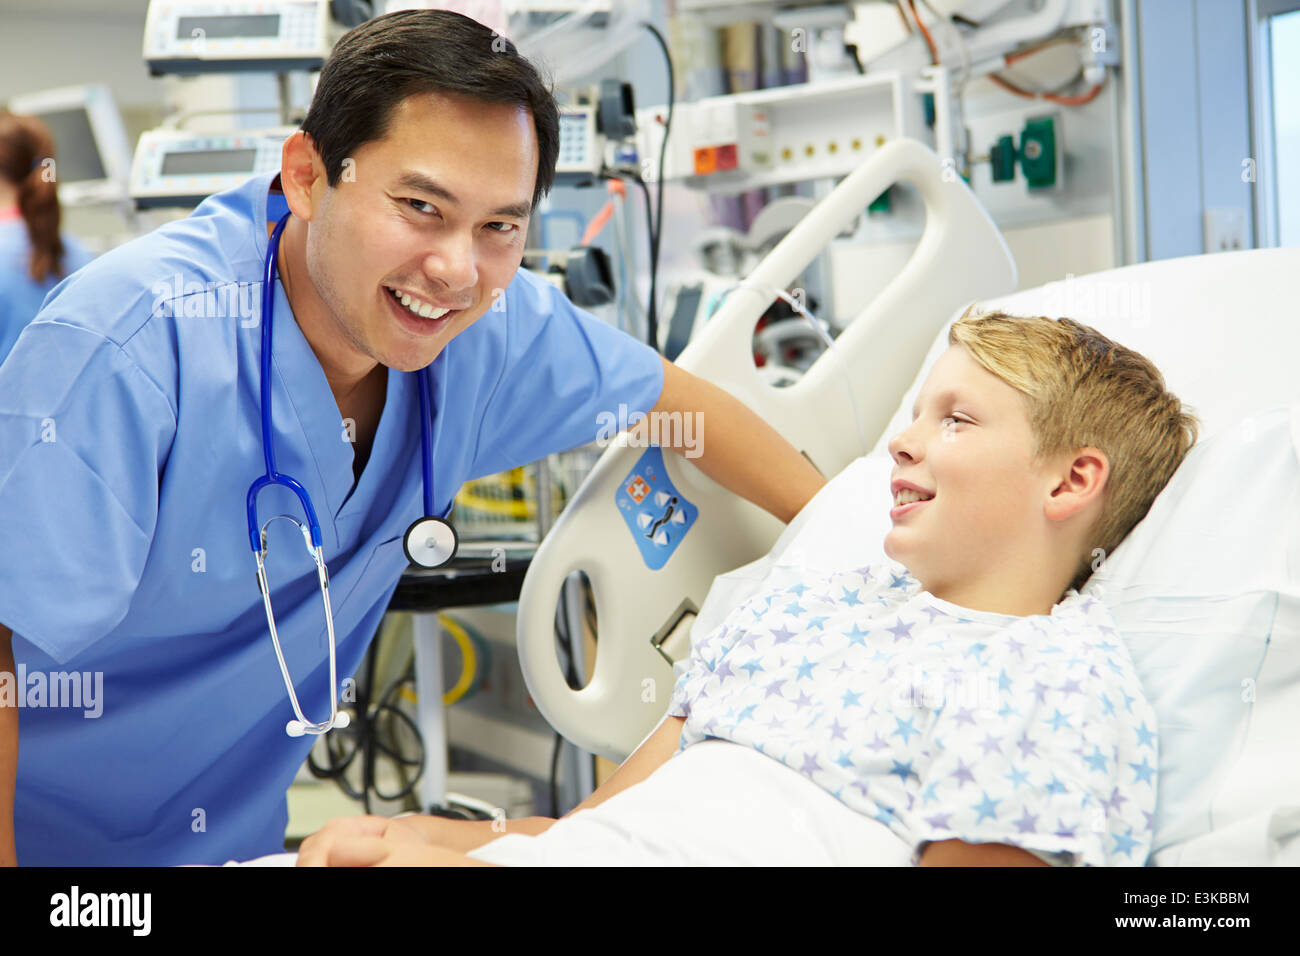 Boy Talking To Male Nurse In Emergency Room Stock Photo